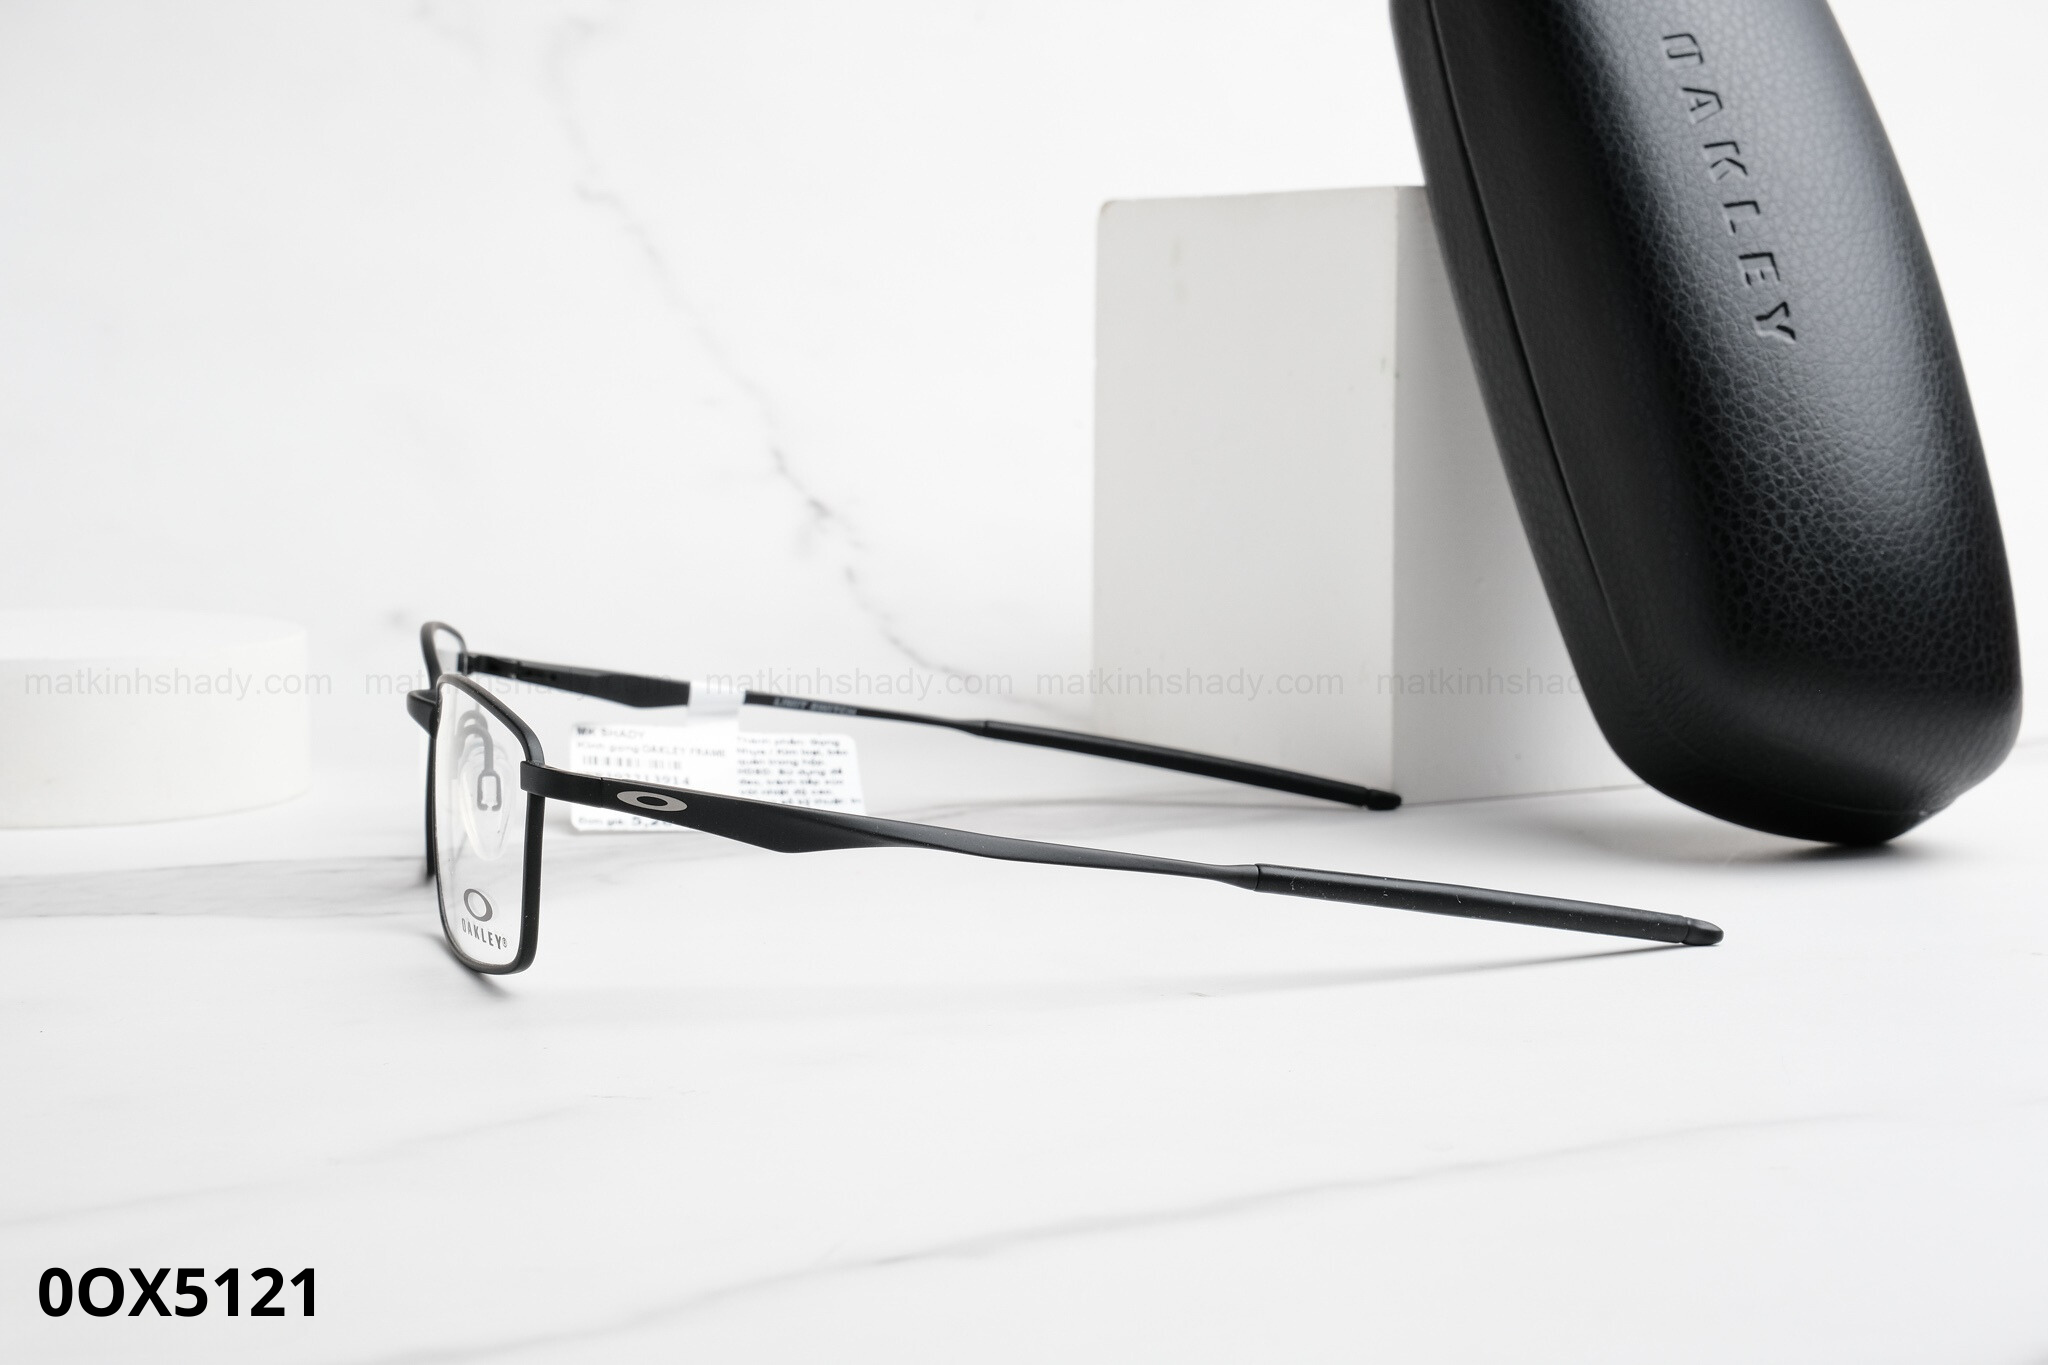  Oakley Eyewear - Glasses - 0OX5121 